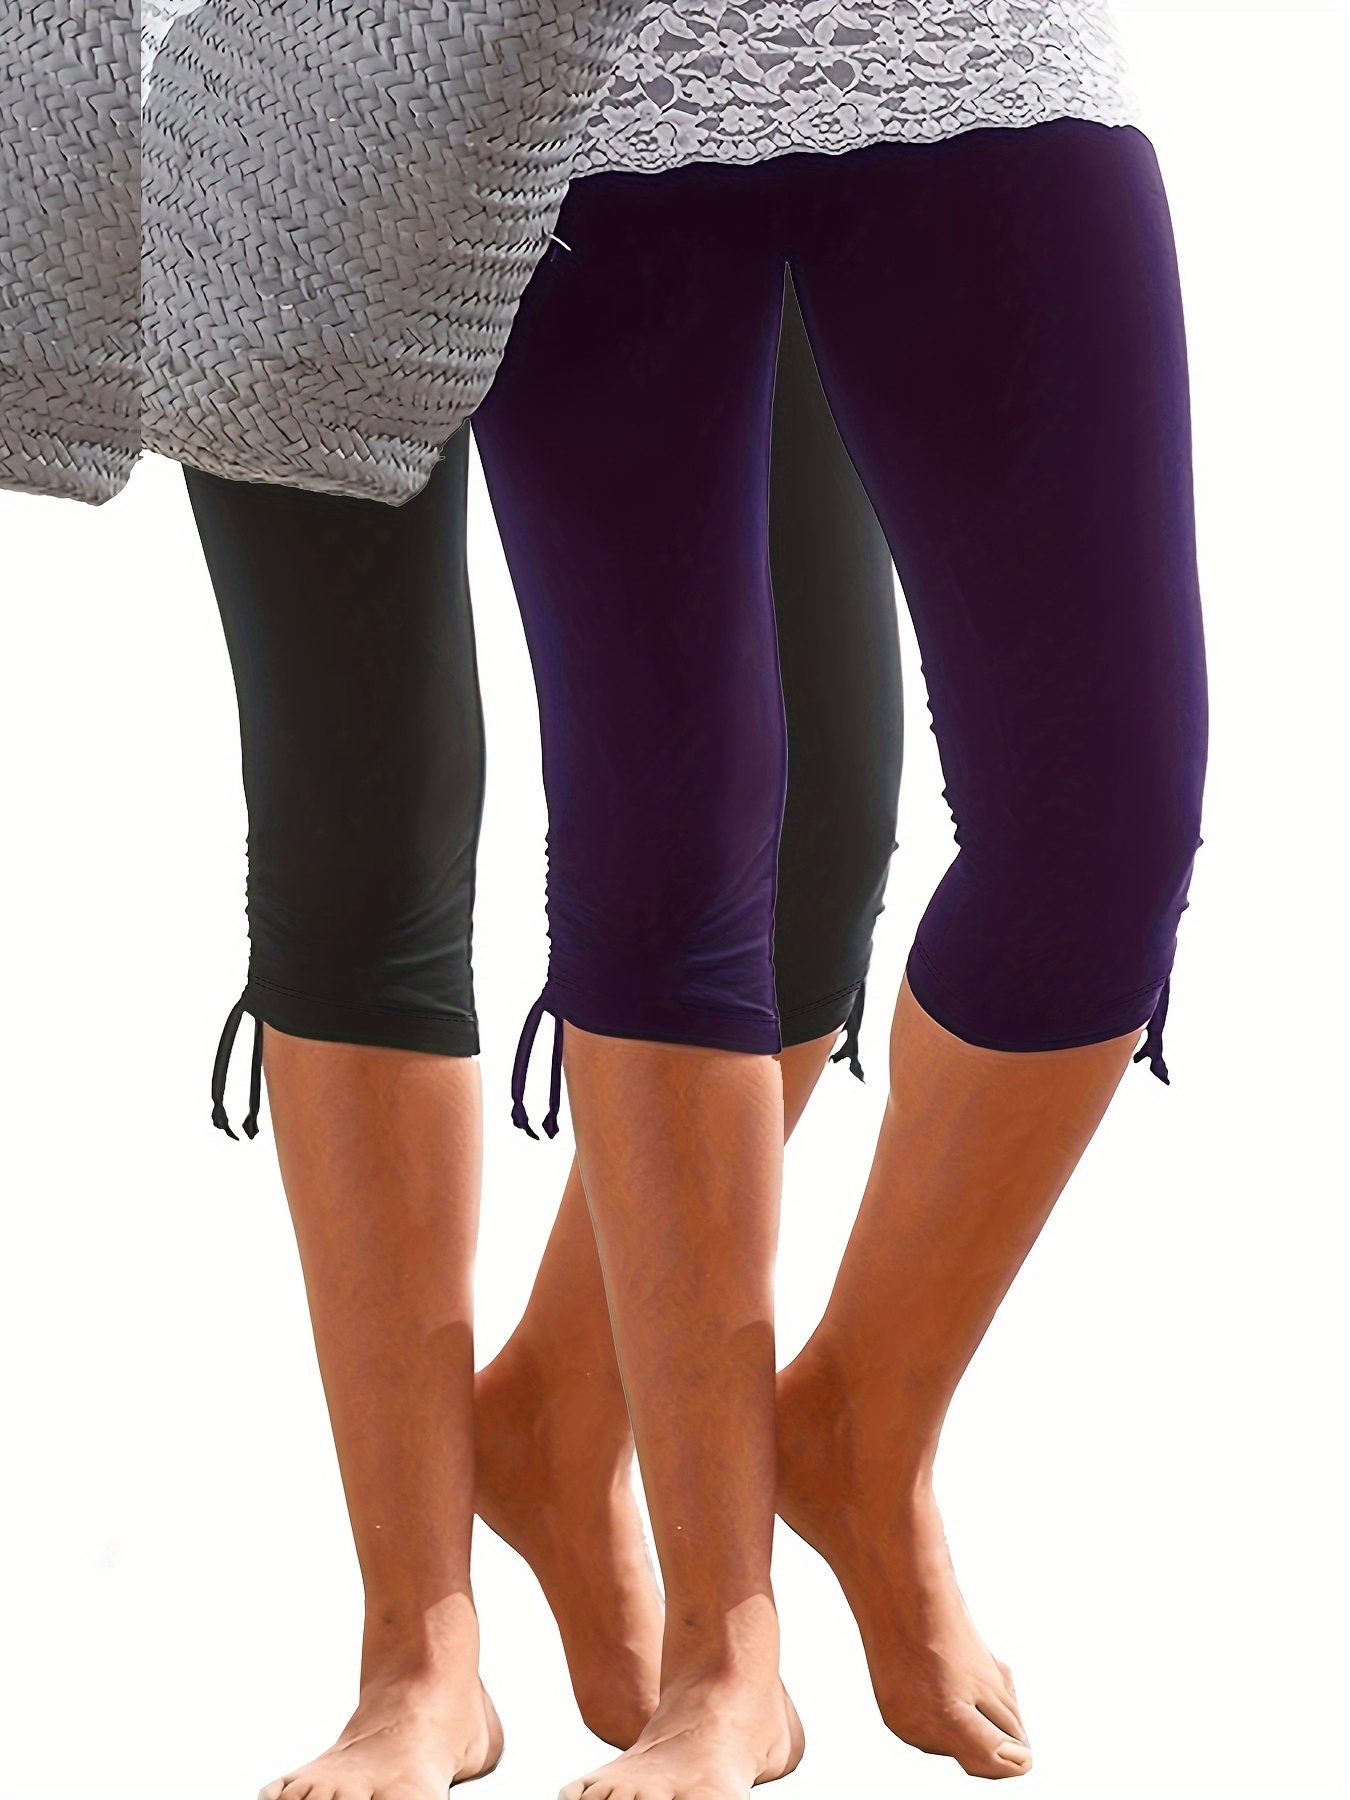 Women's Capri Yoga Pants